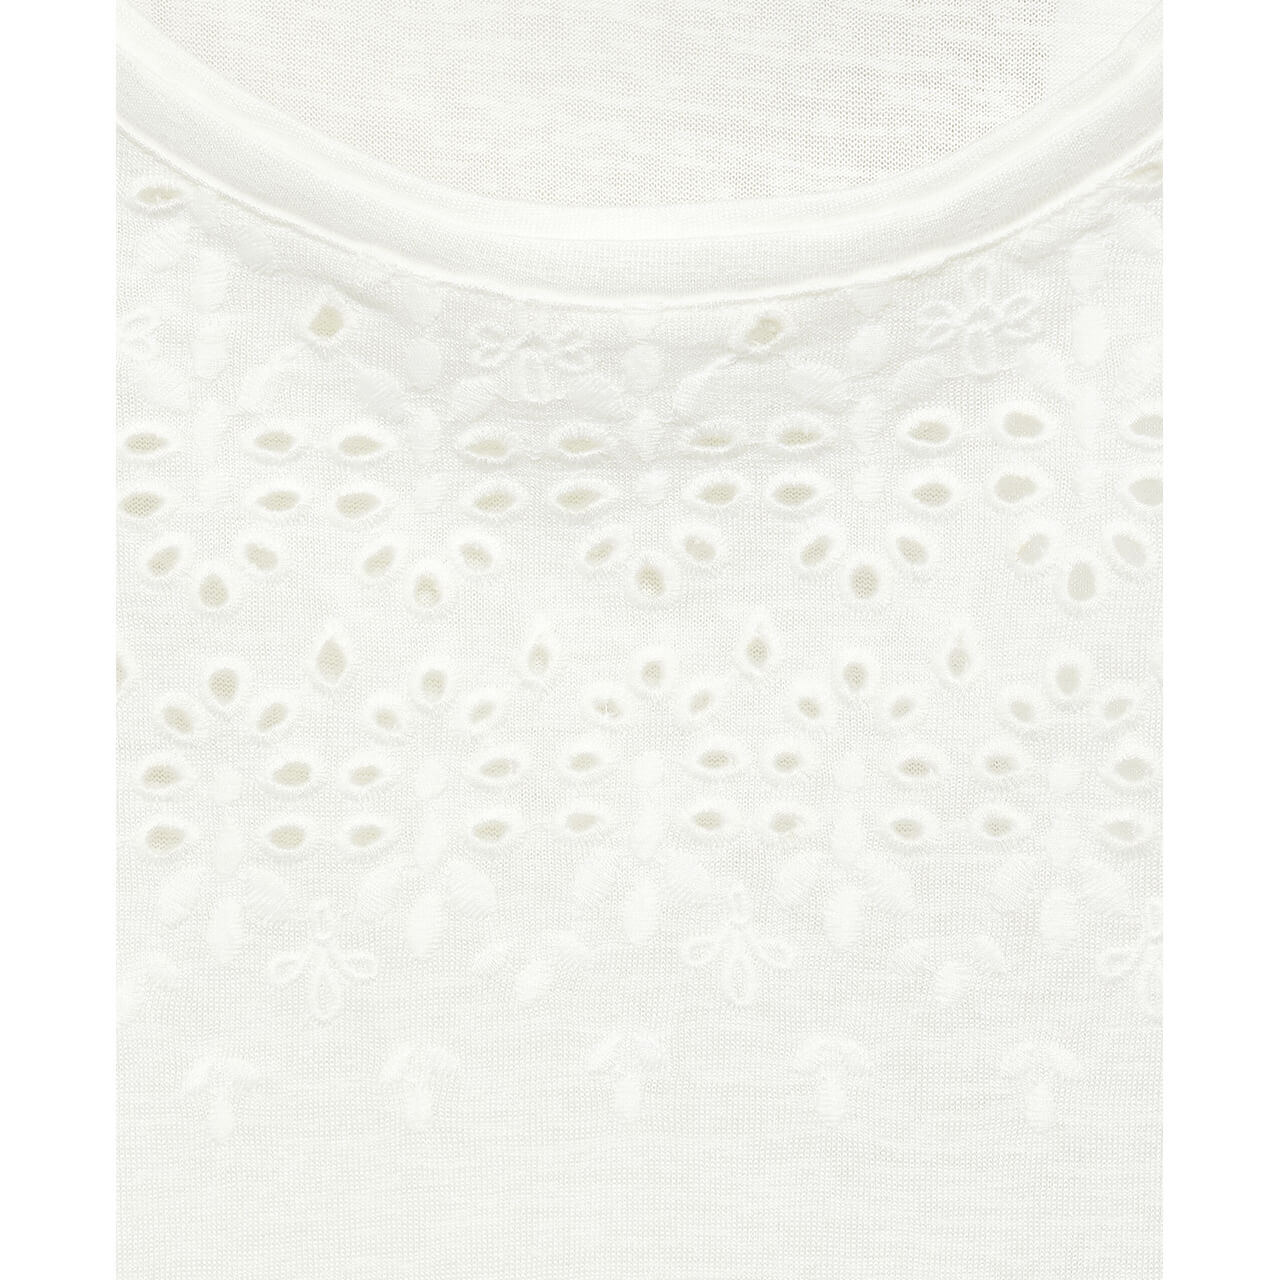 Cecil Damen T-Shirt Embroidery vanilla white